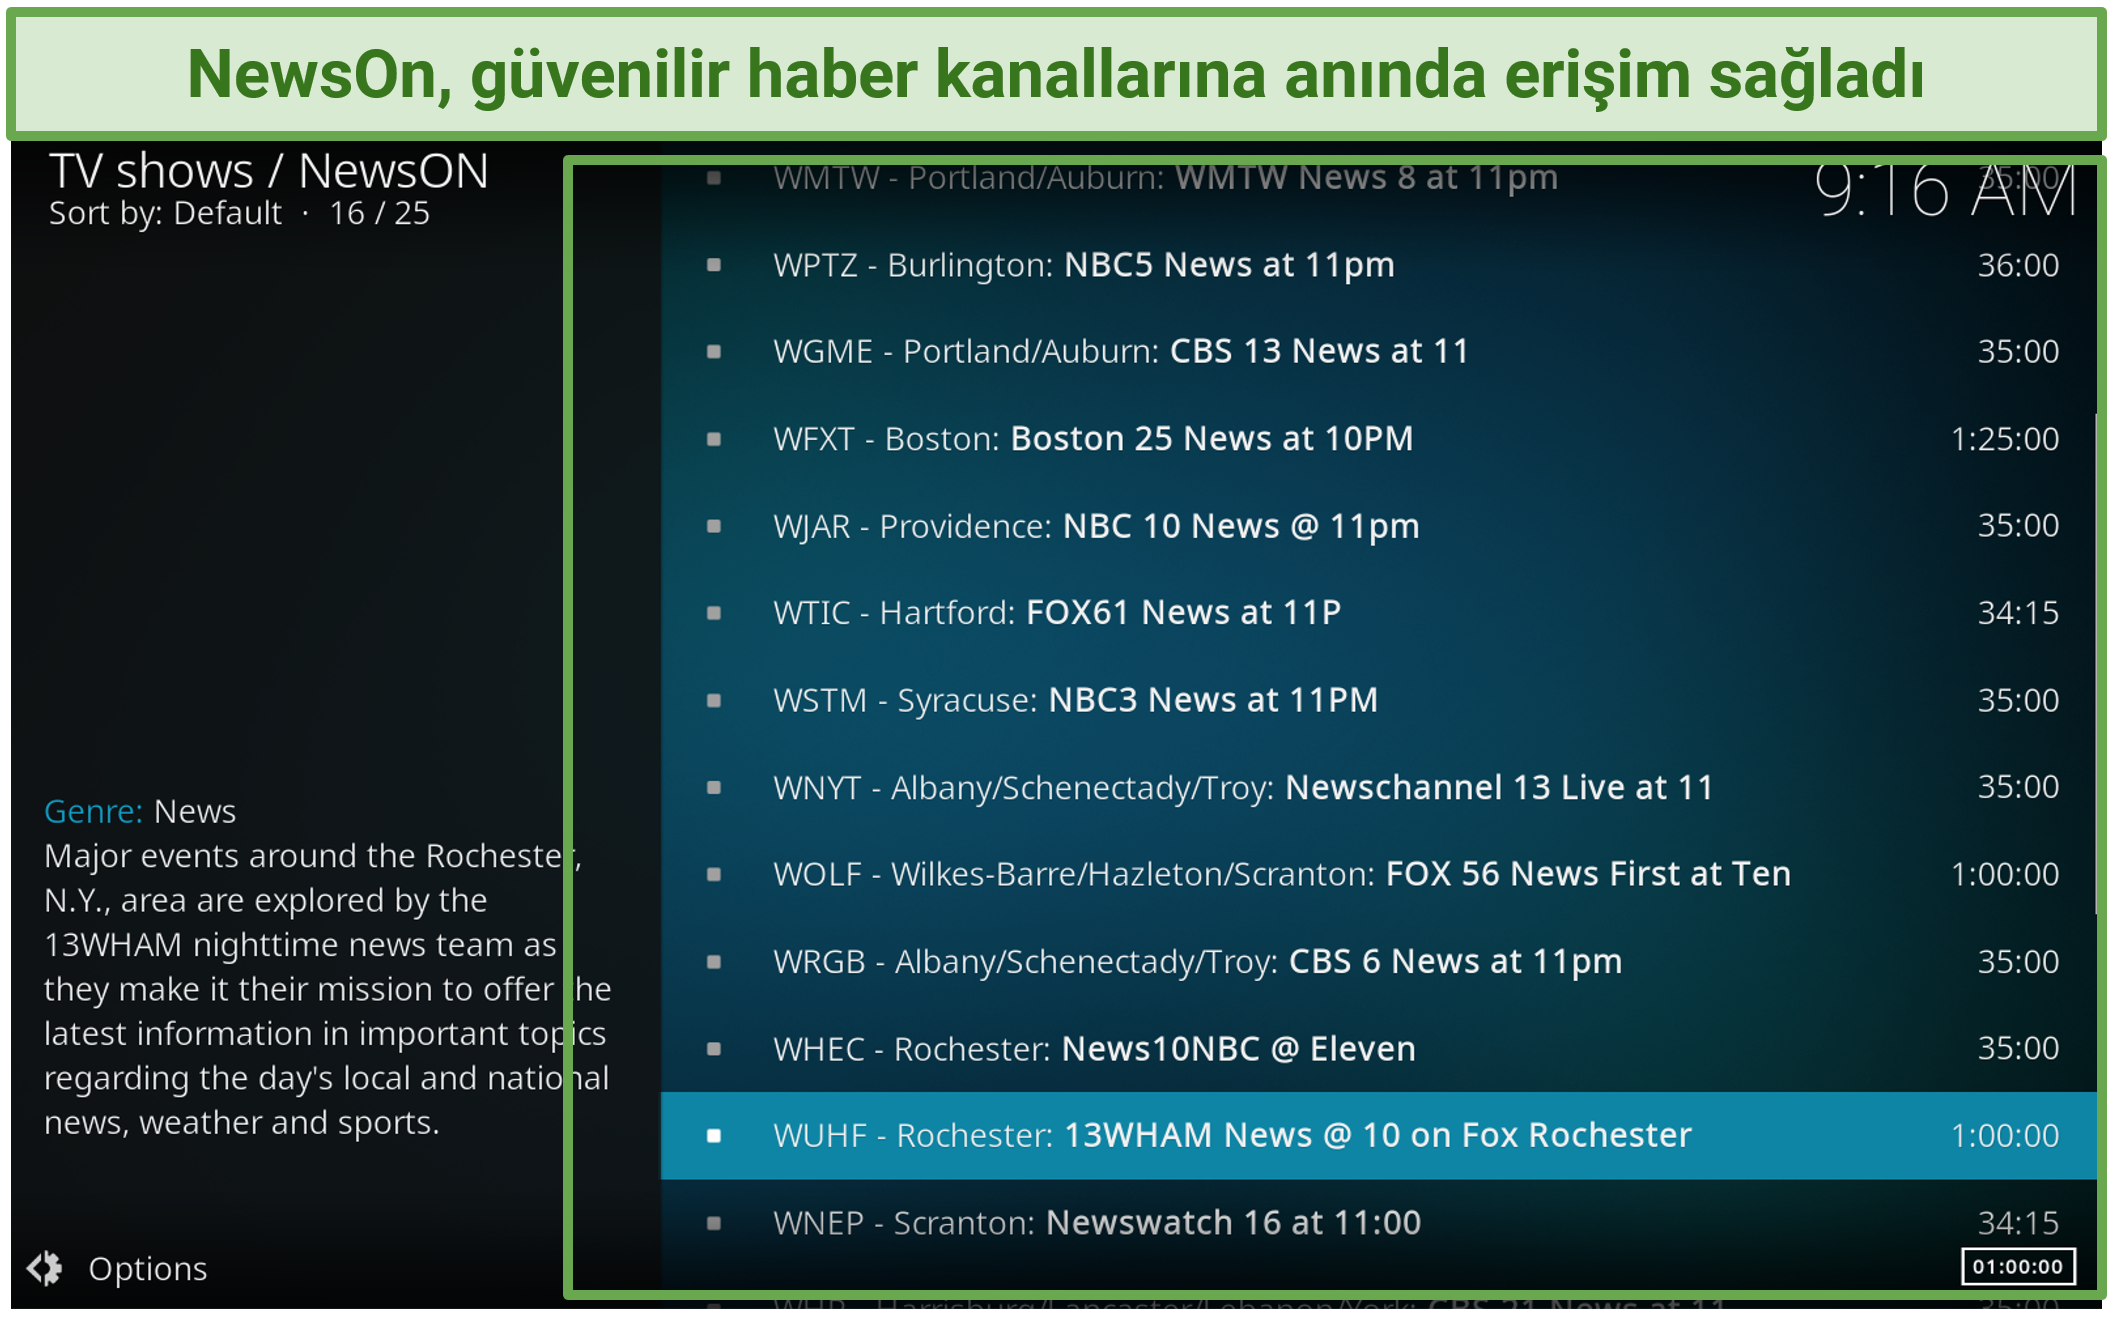 NewsOn Kodi eklentisi kullanarak ABD'deki güvenilir haber kanallarını yayınlayabileceğinizi gösteren bir ekran görüntüsü